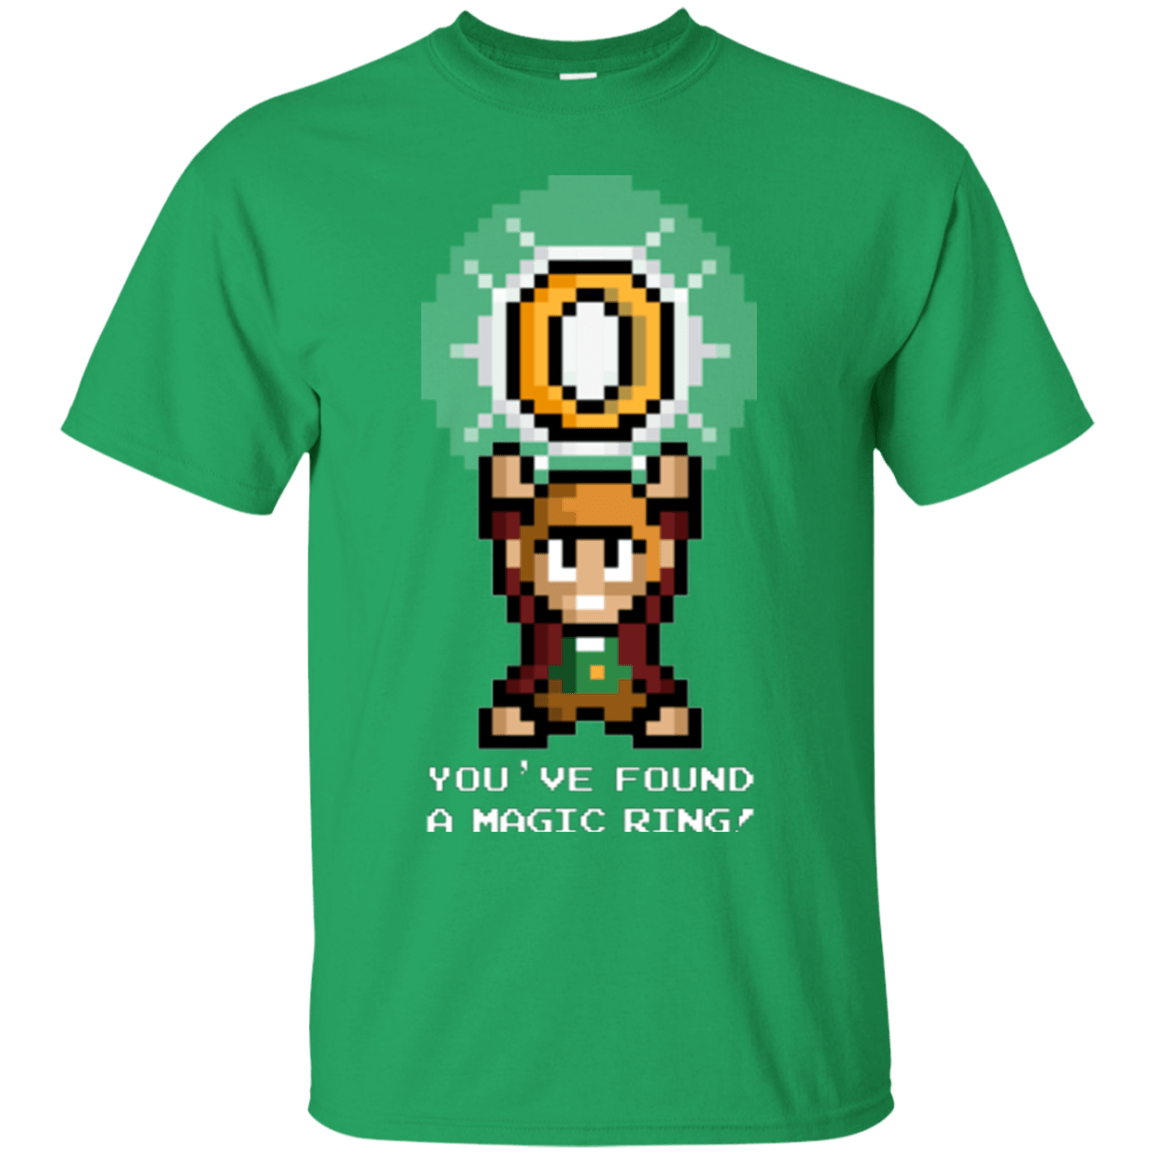 T-Shirts Irish Green / Small Magic Ring T-Shirt